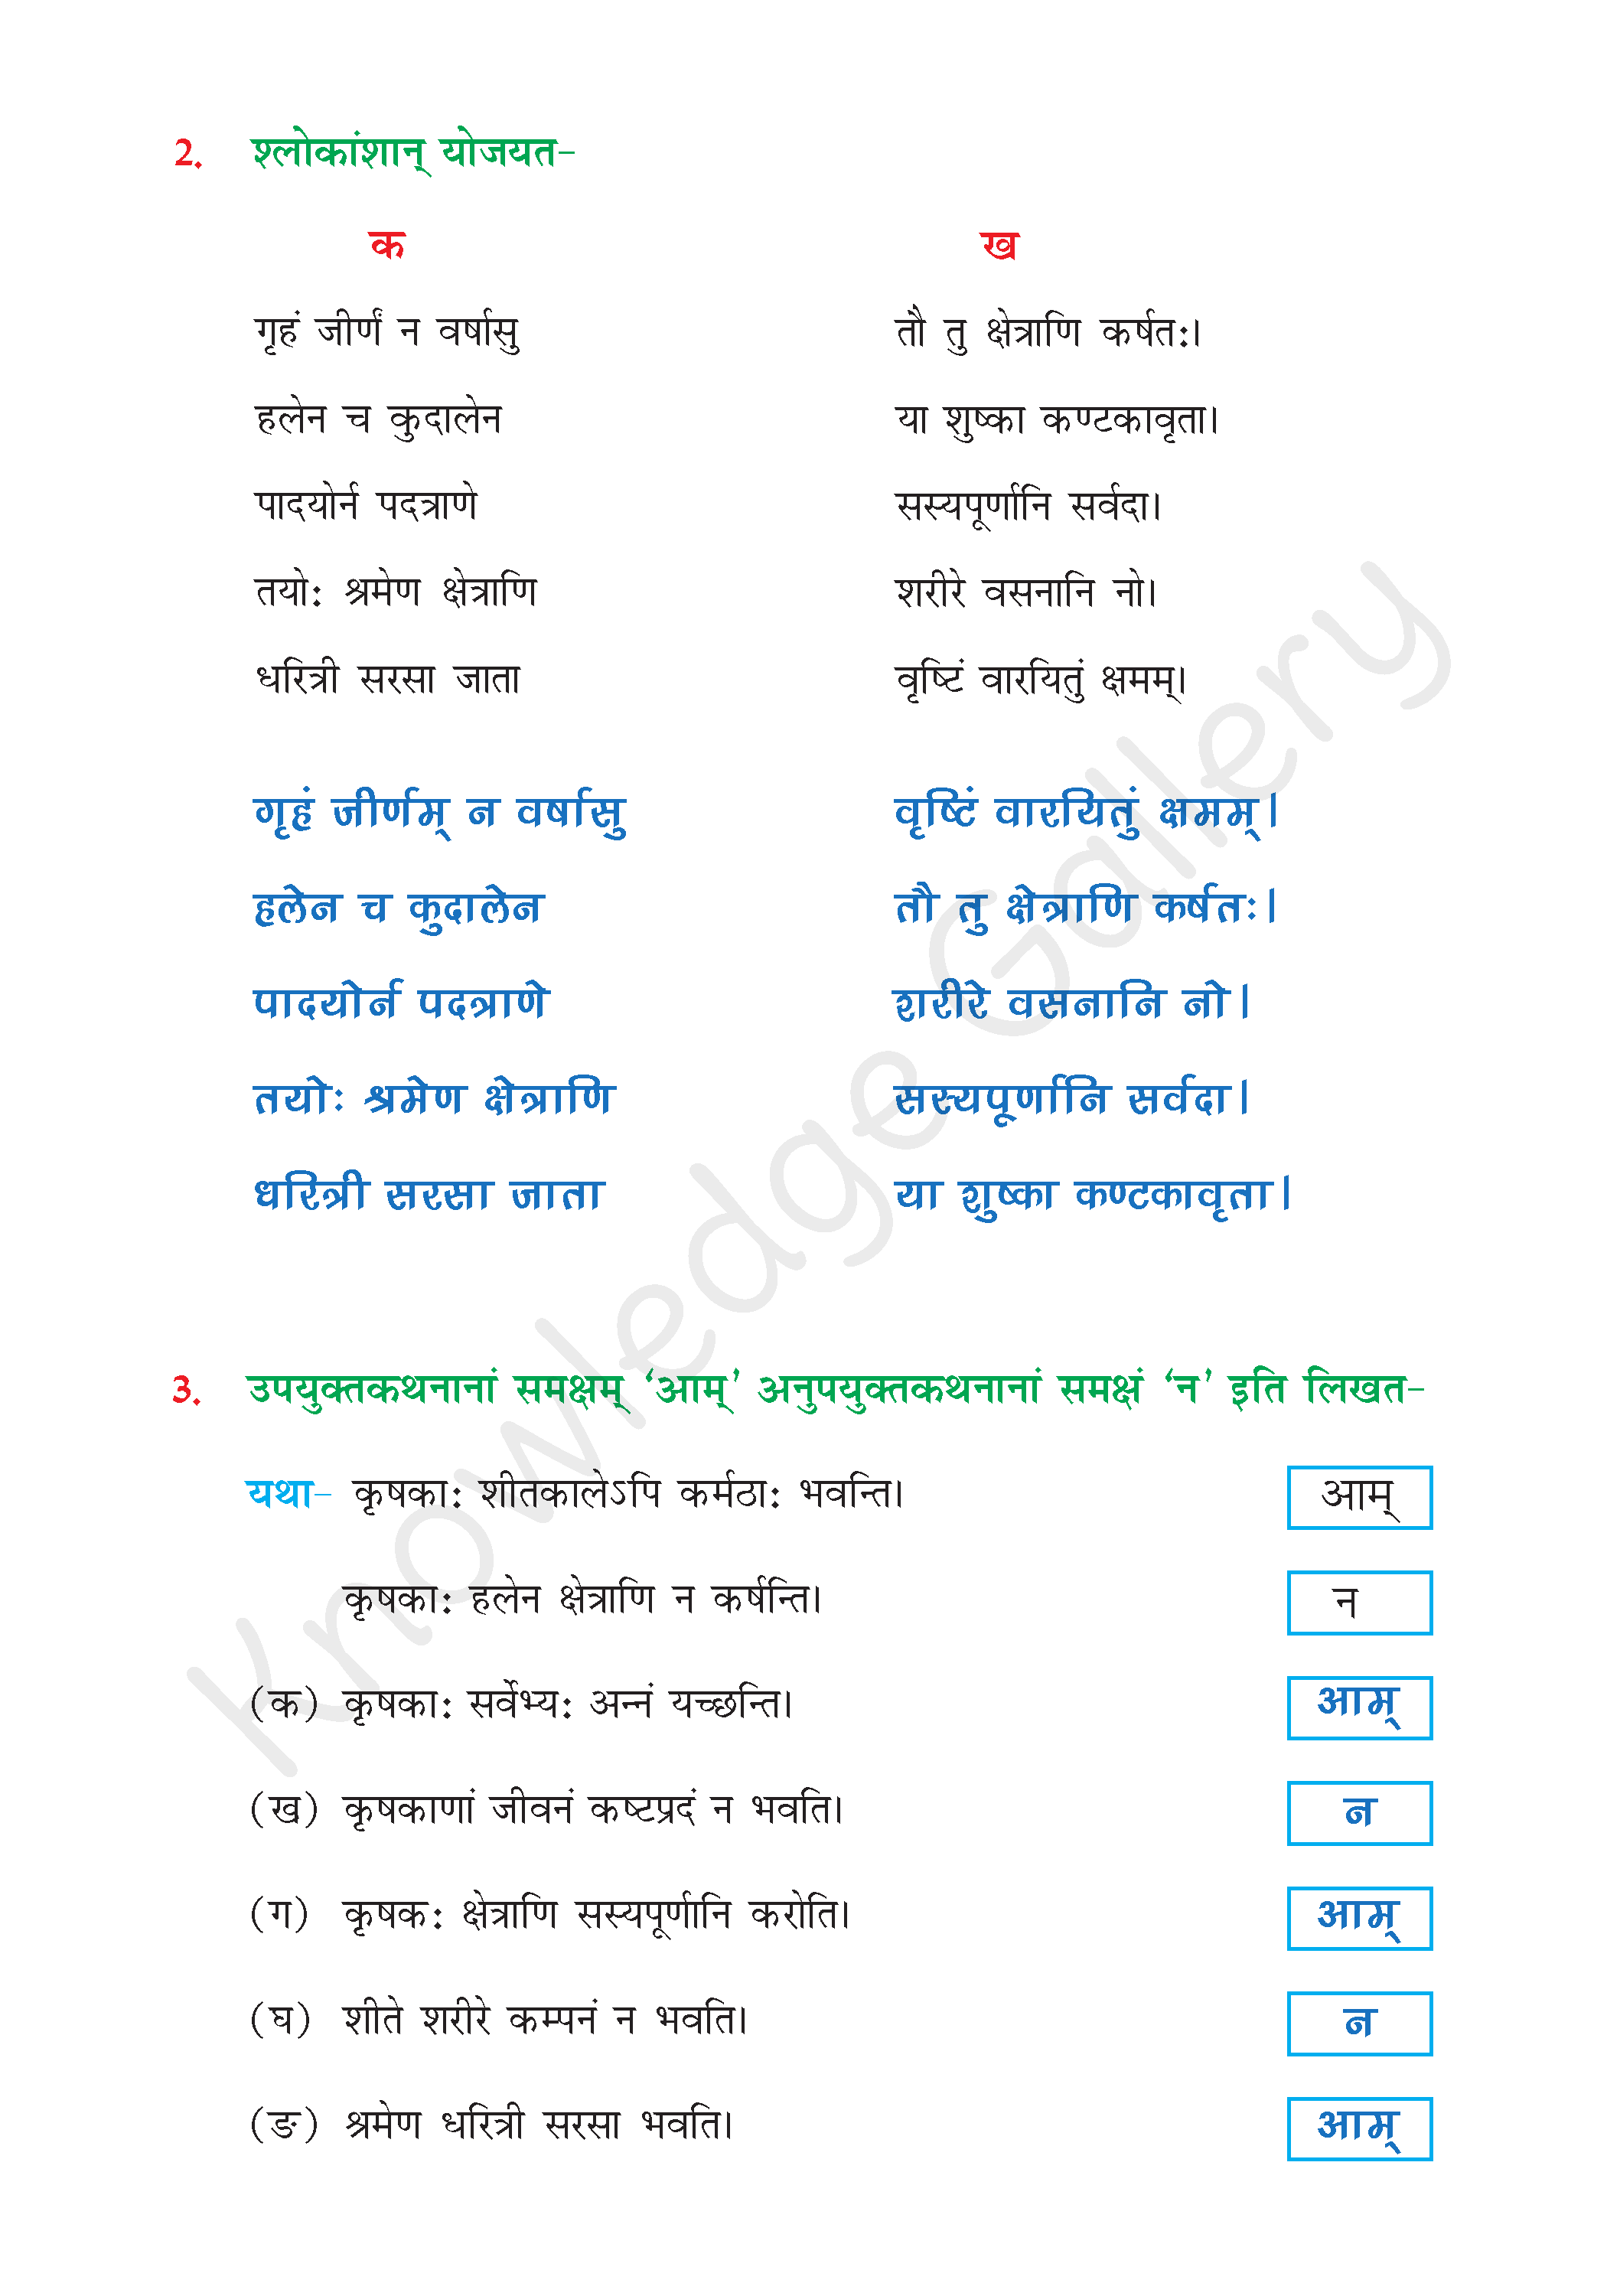 NCERT Solution For Class 6 Sanskrit Chapter 10 part 4